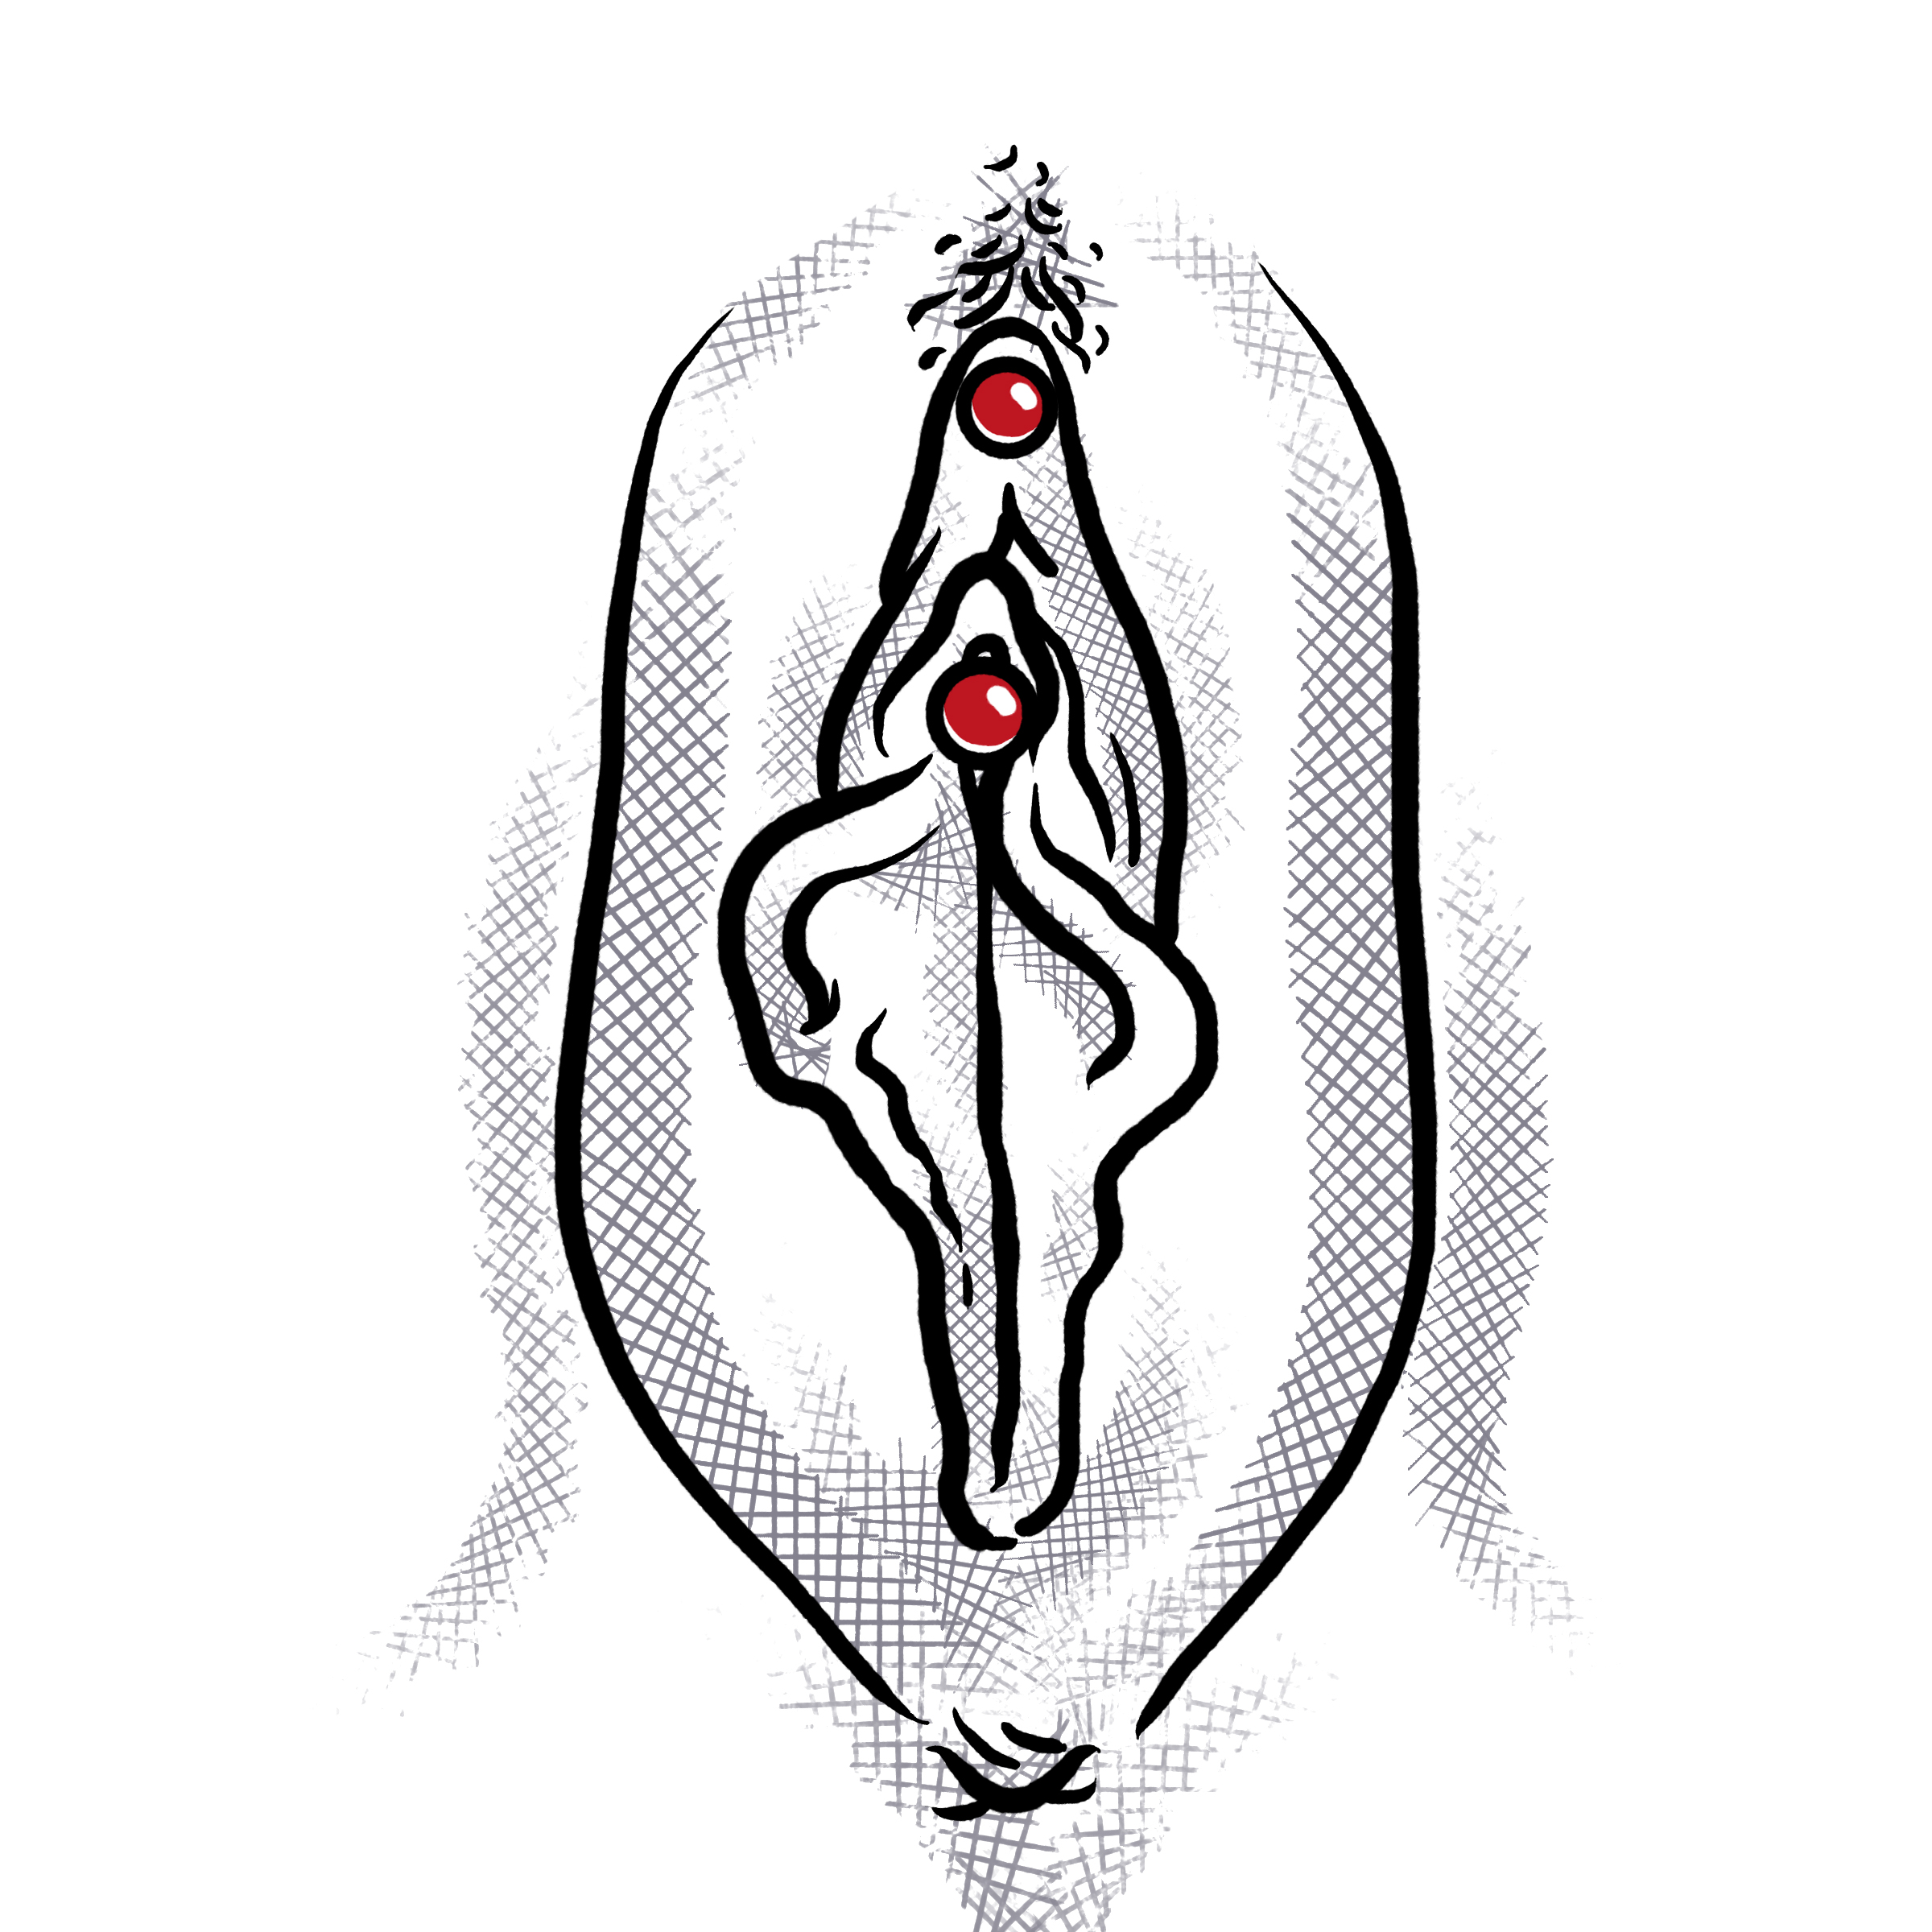 Vorhaut piercing klitoris sucdescssanas: Intimpiercing